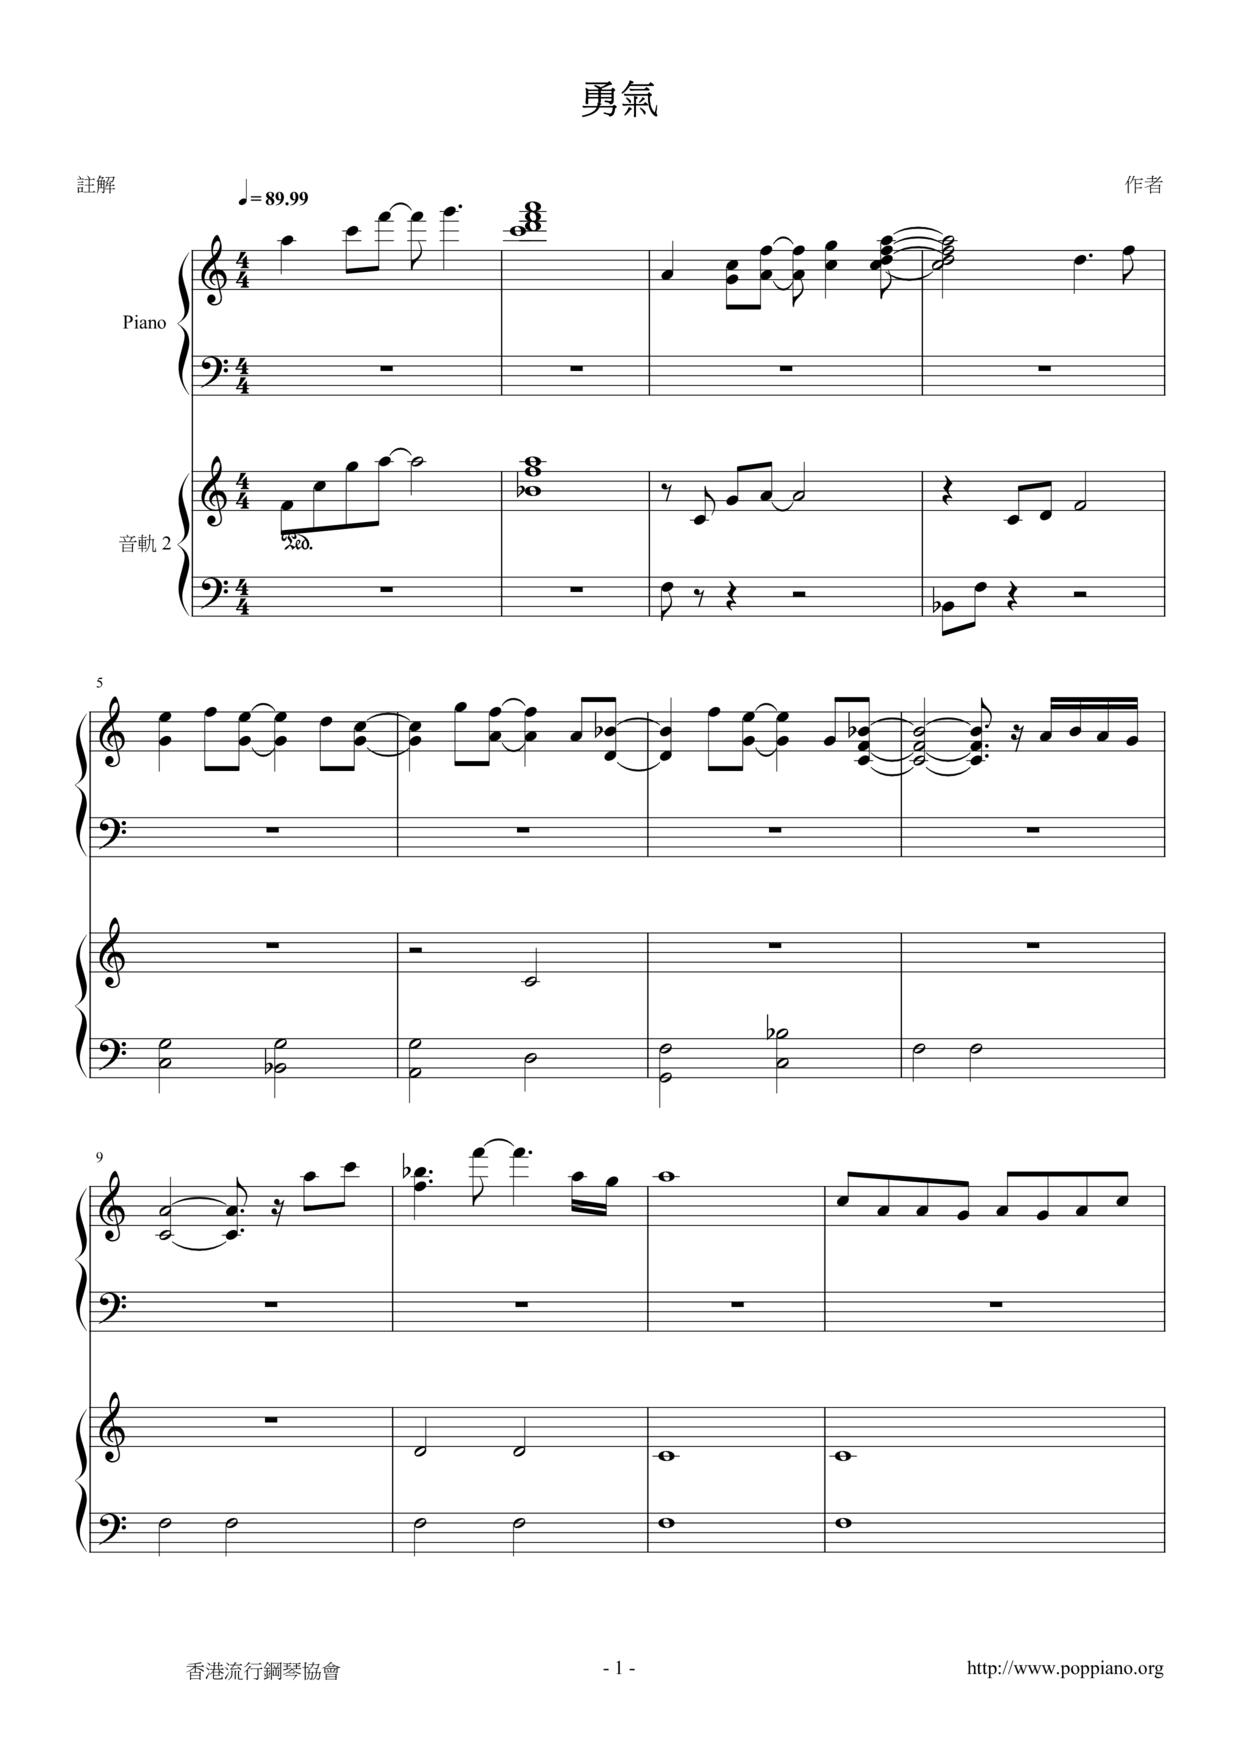 光良-勇气 琴谱/五线谱pdf-香港流行钢琴协会琴谱下载